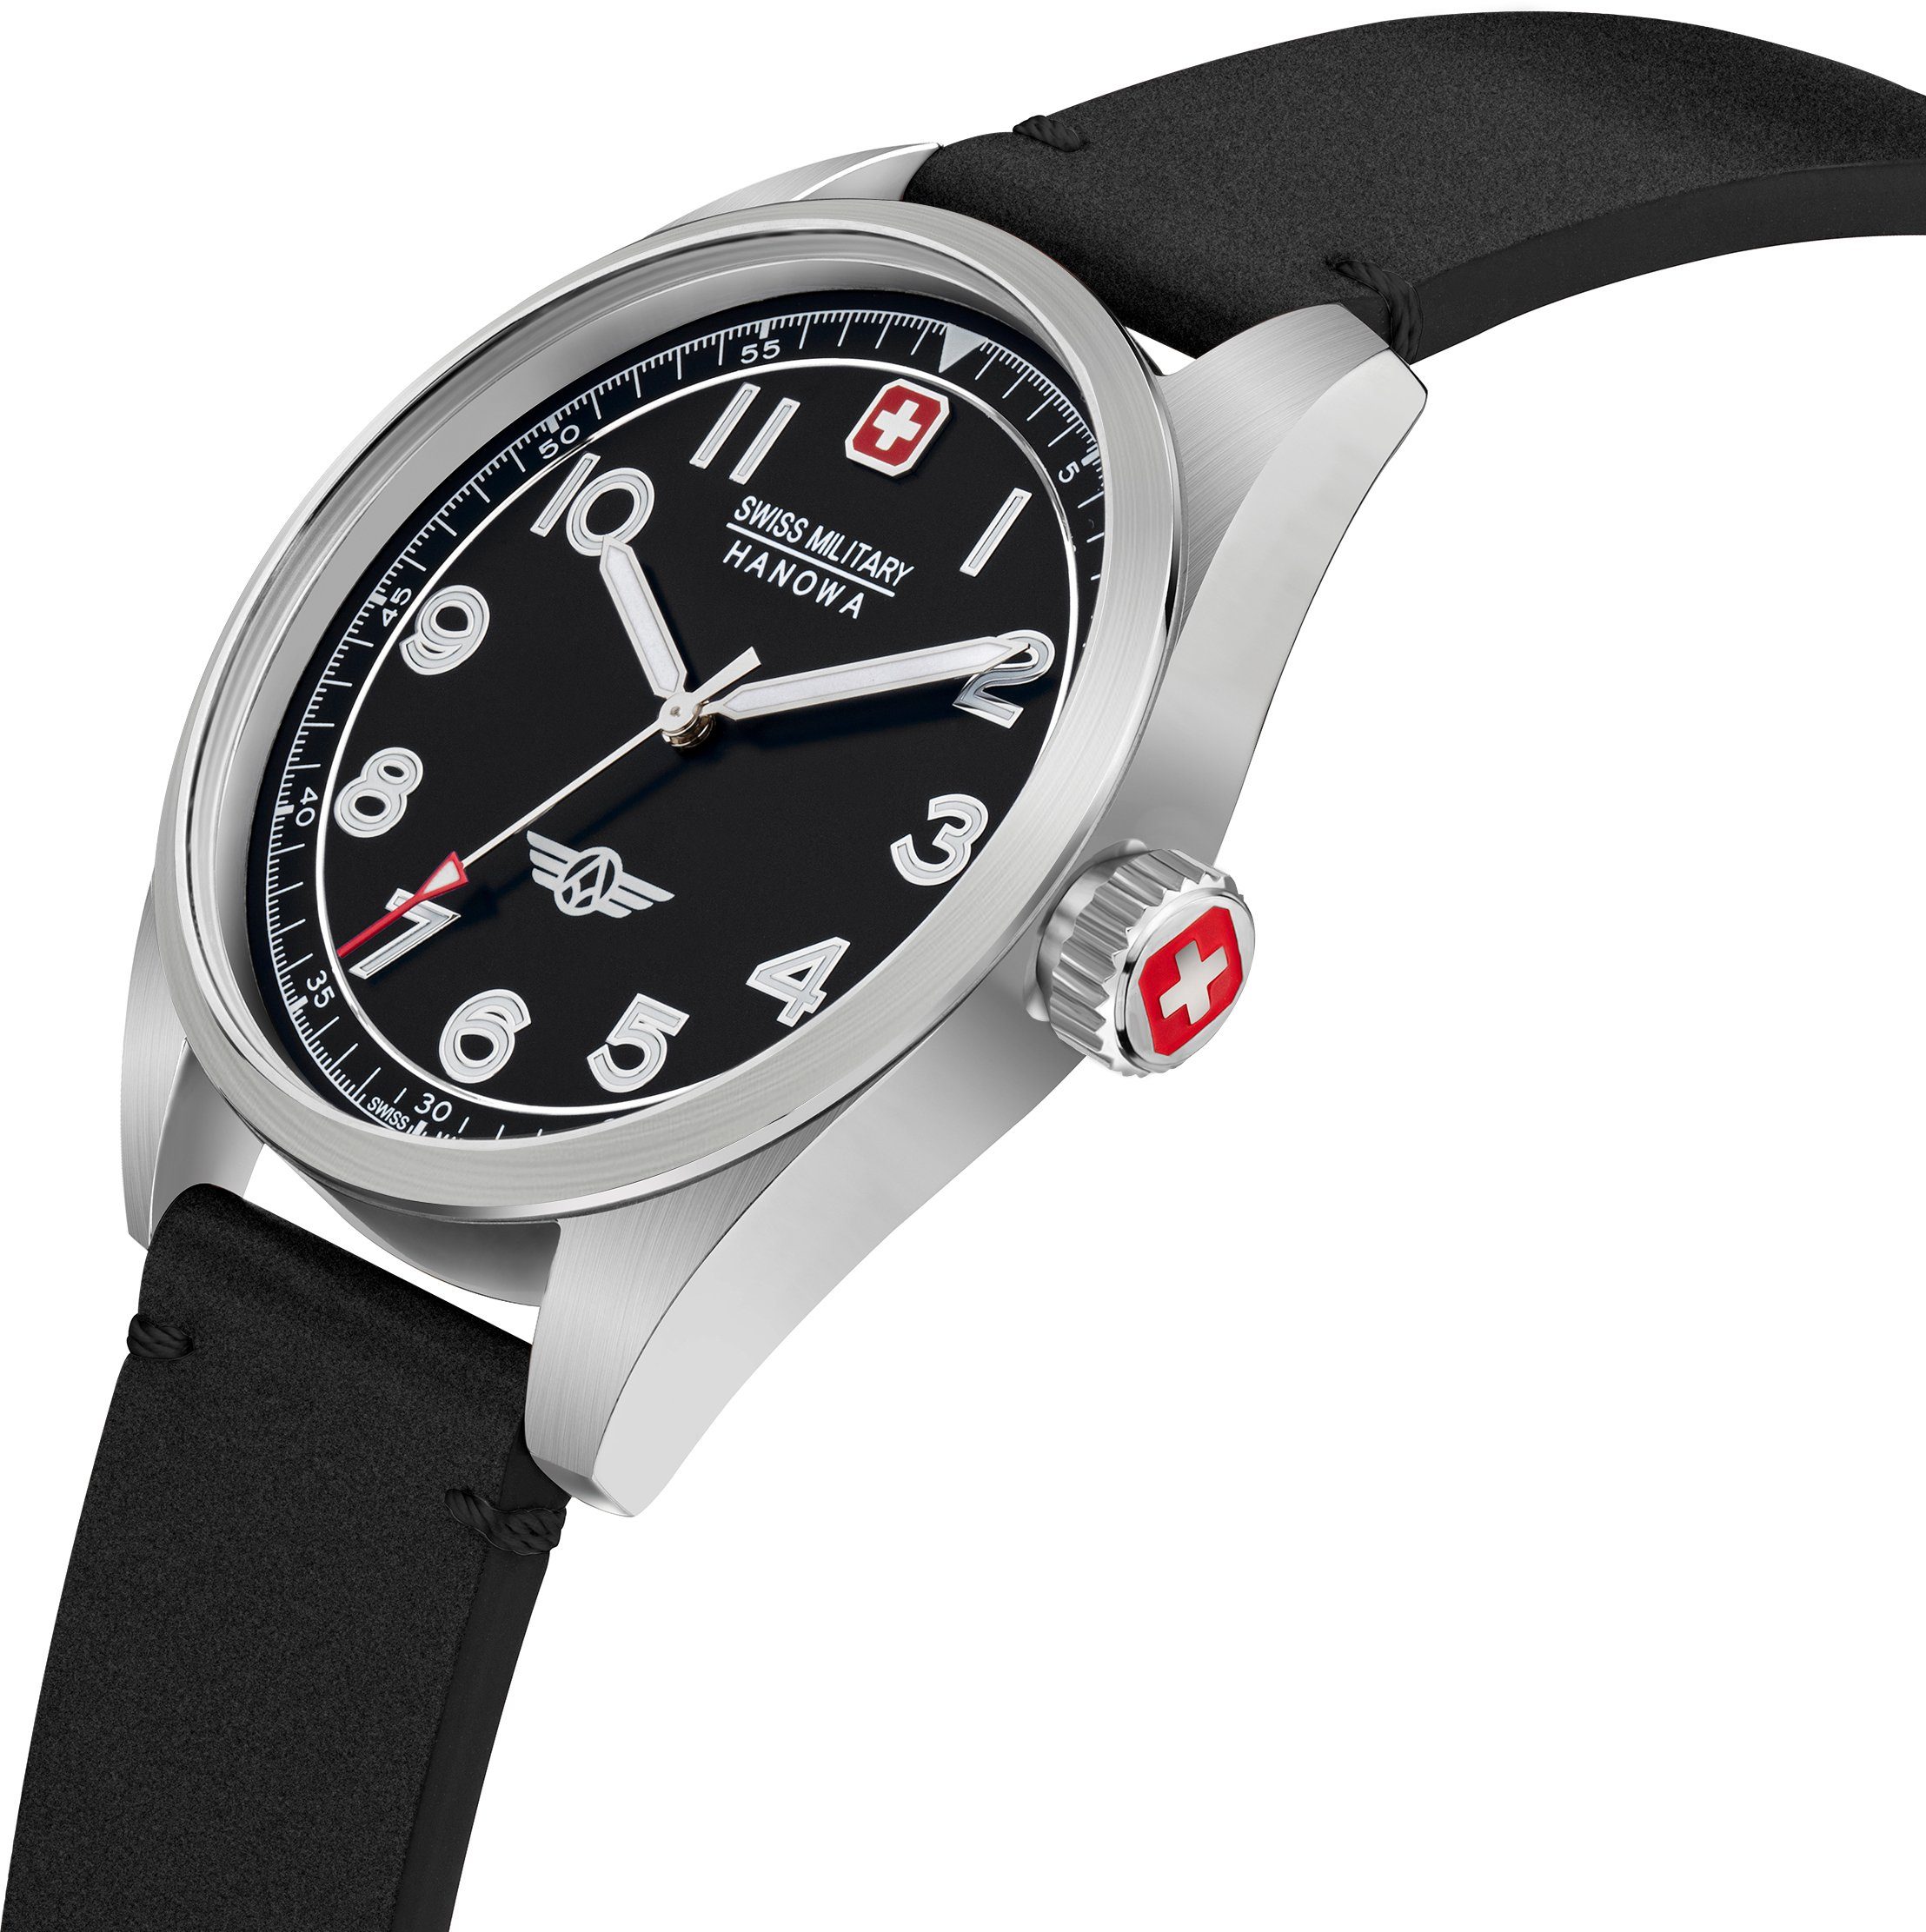 Hanowa Swiss Uhr Schwarz FALCON, Military SMWGA2100401 Schweizer